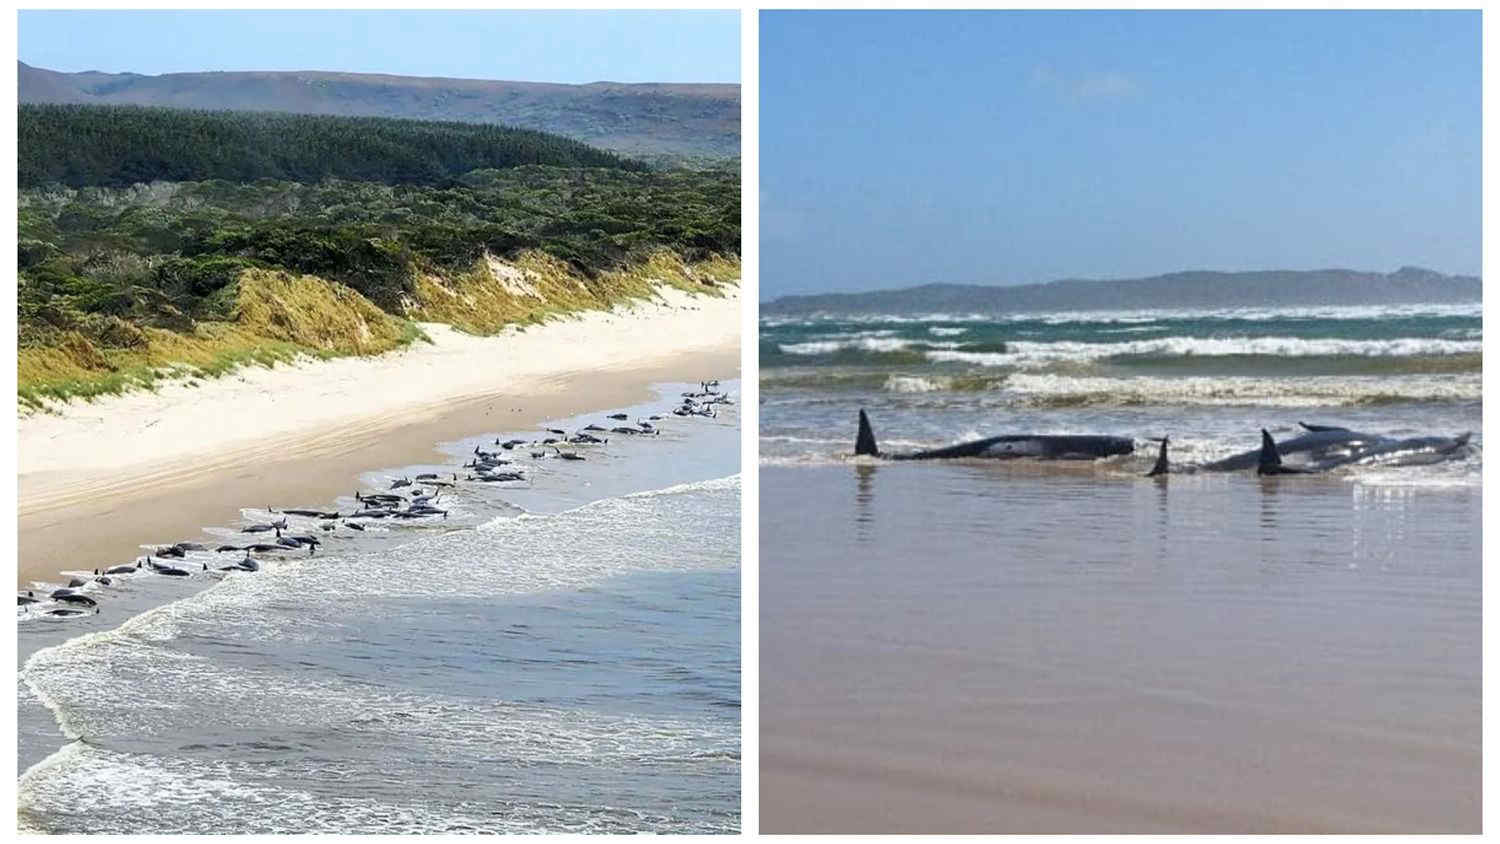 Oltre 200 balene arenate in Tasmania: terribile spiaggiamento di massa